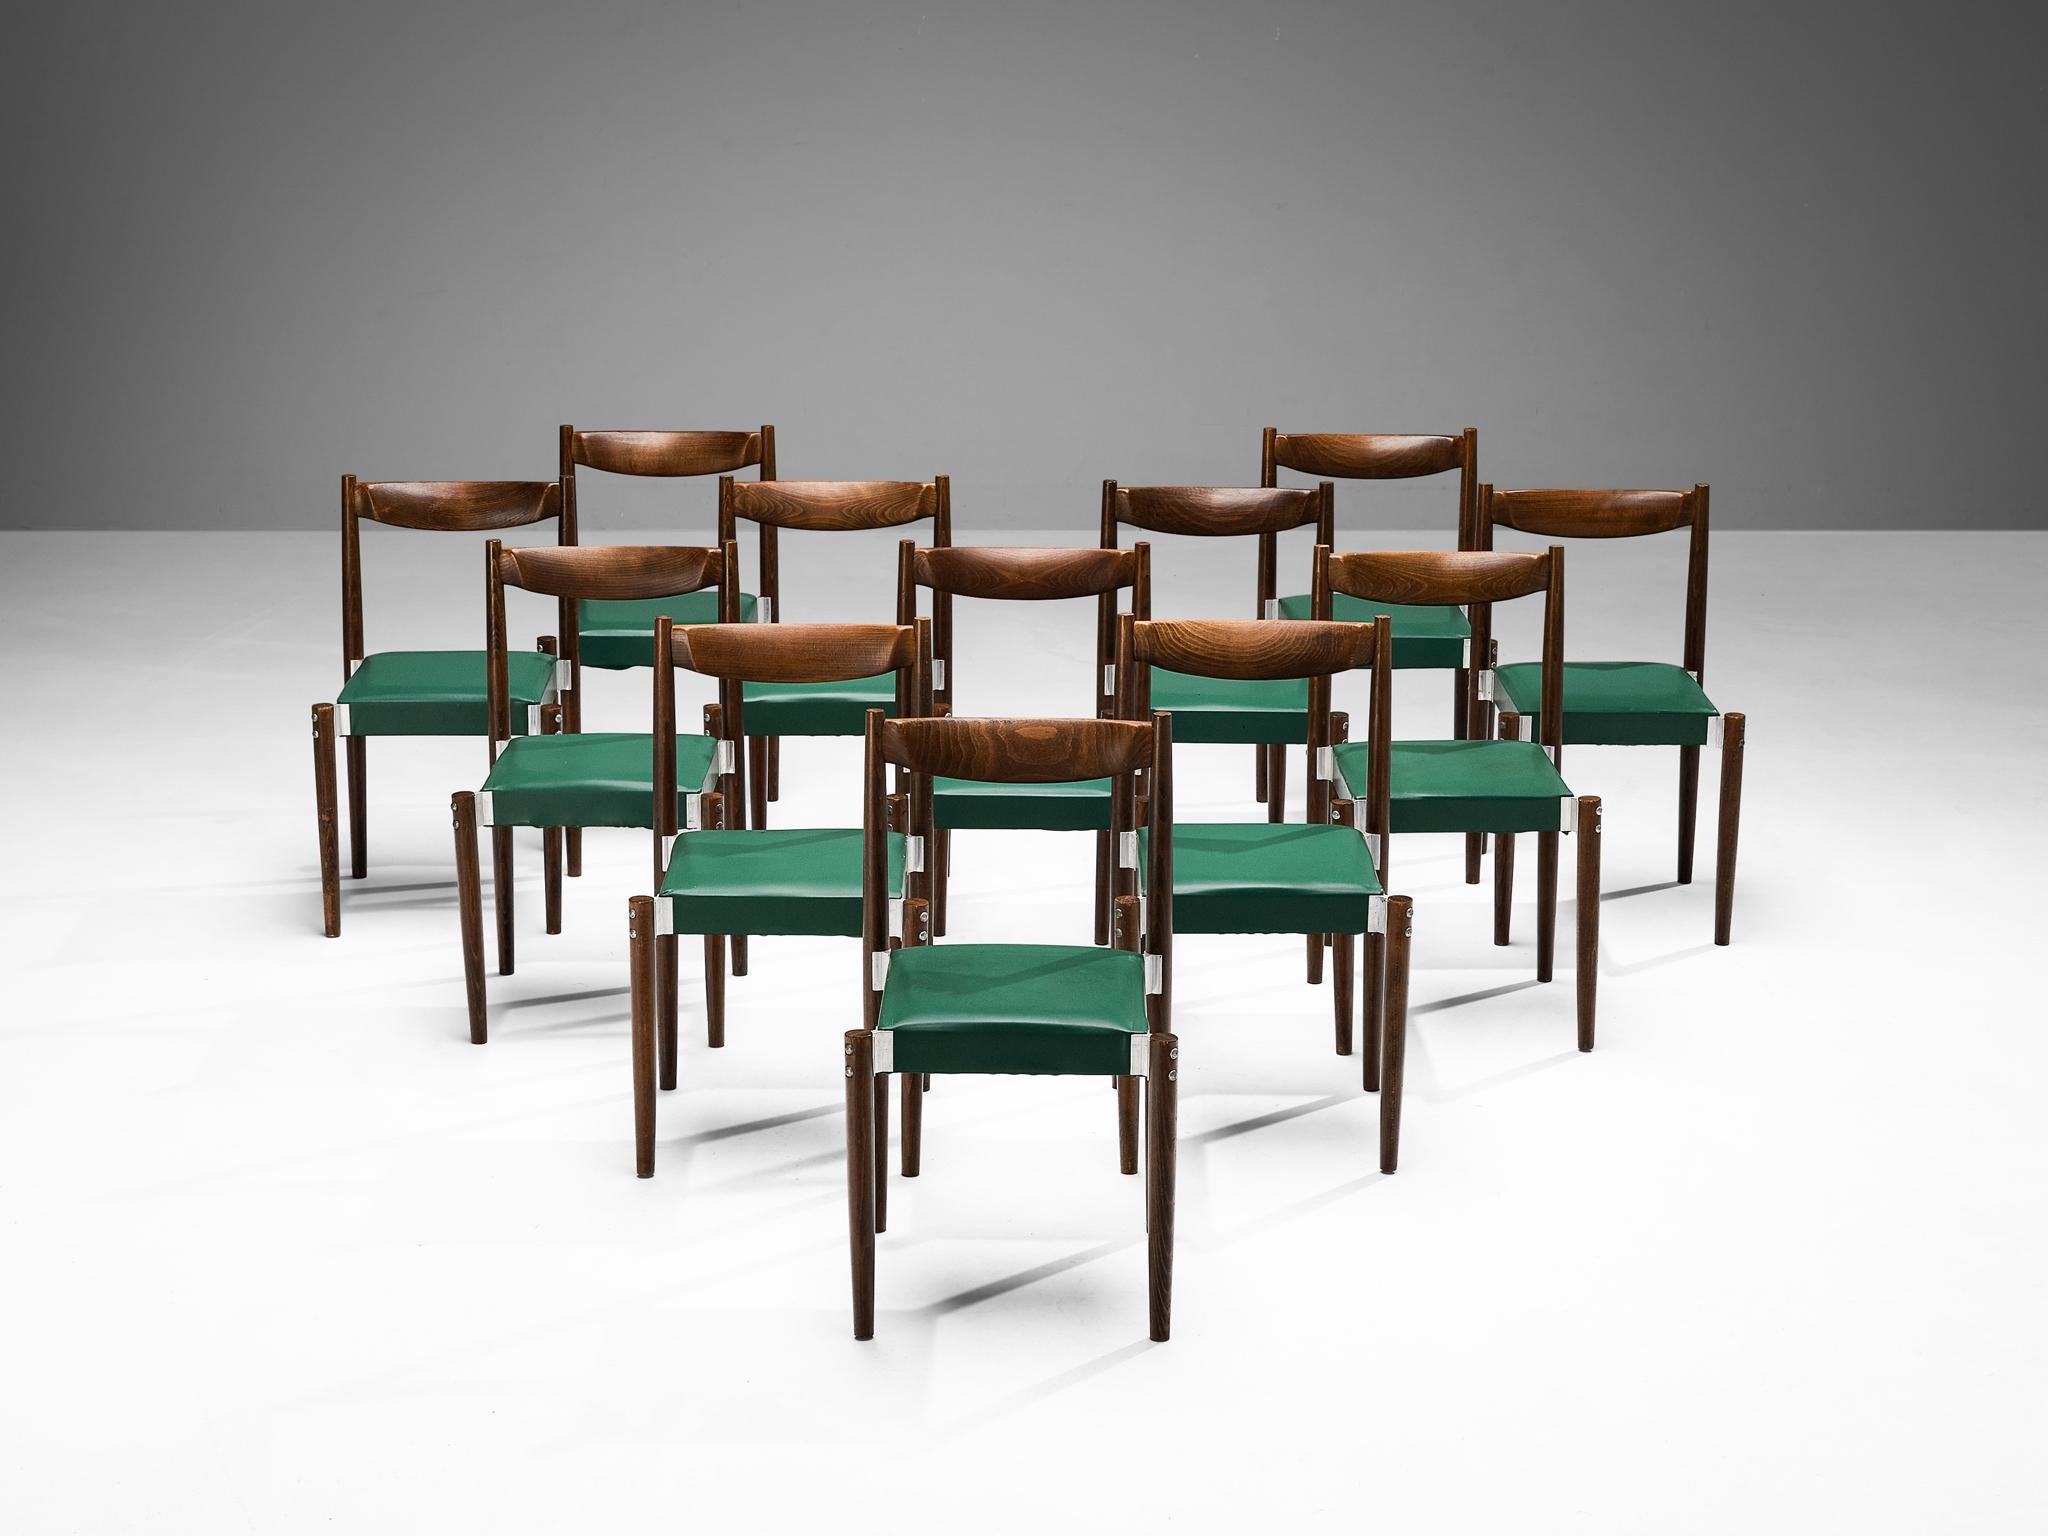 Ensemble de douze chaises de salle à manger, similicuir, hêtre teinté, aluminium, République tchèque, années 1960.

Ensemble de chaises de salle à manger bien proportionnées, avec des détails constructifs perceptibles dans les joints en aluminium